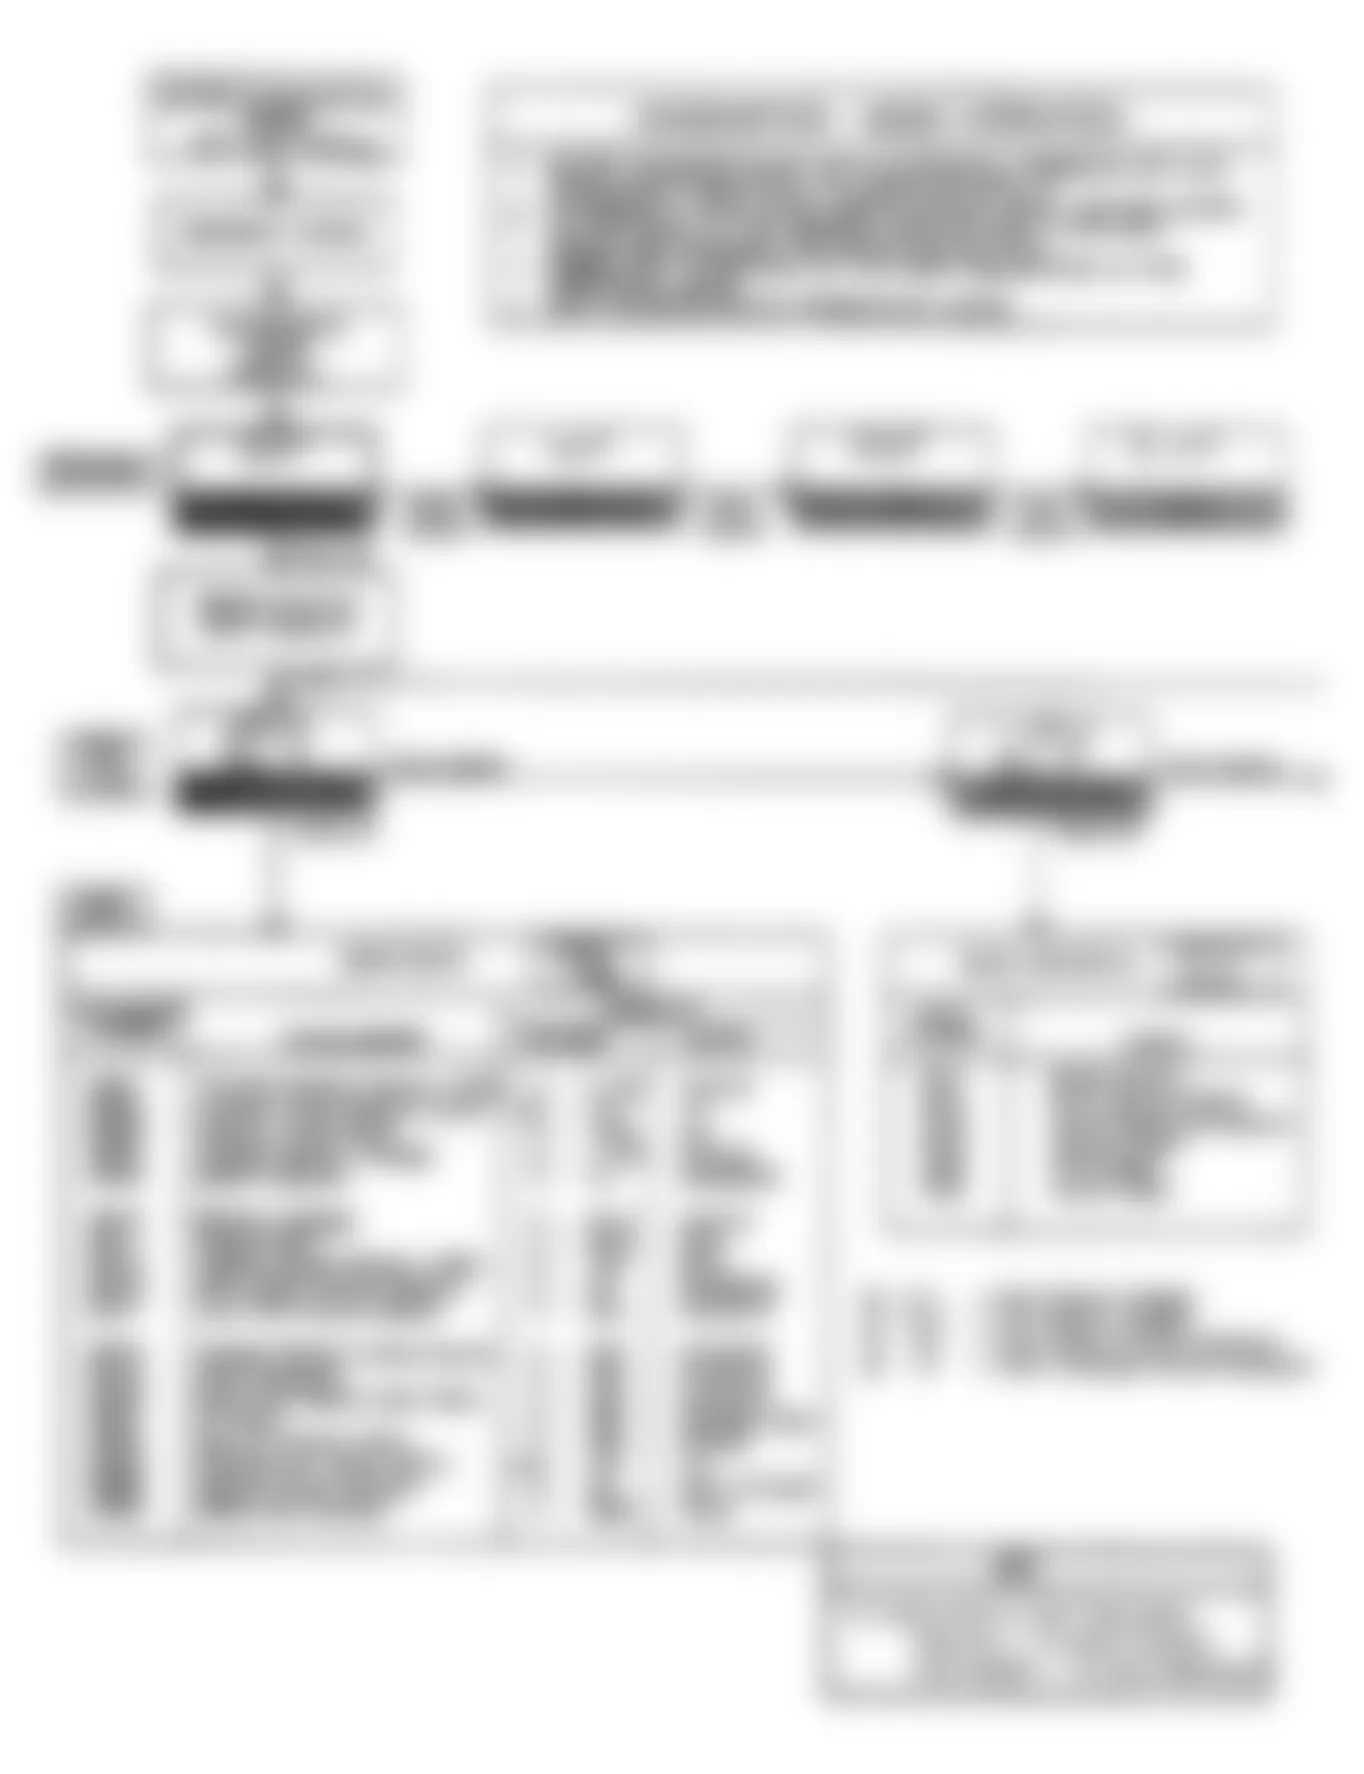 Buick Reatta 1990 - Component Locations -  Diagnostic ECM Flow Chart (1 of 6)